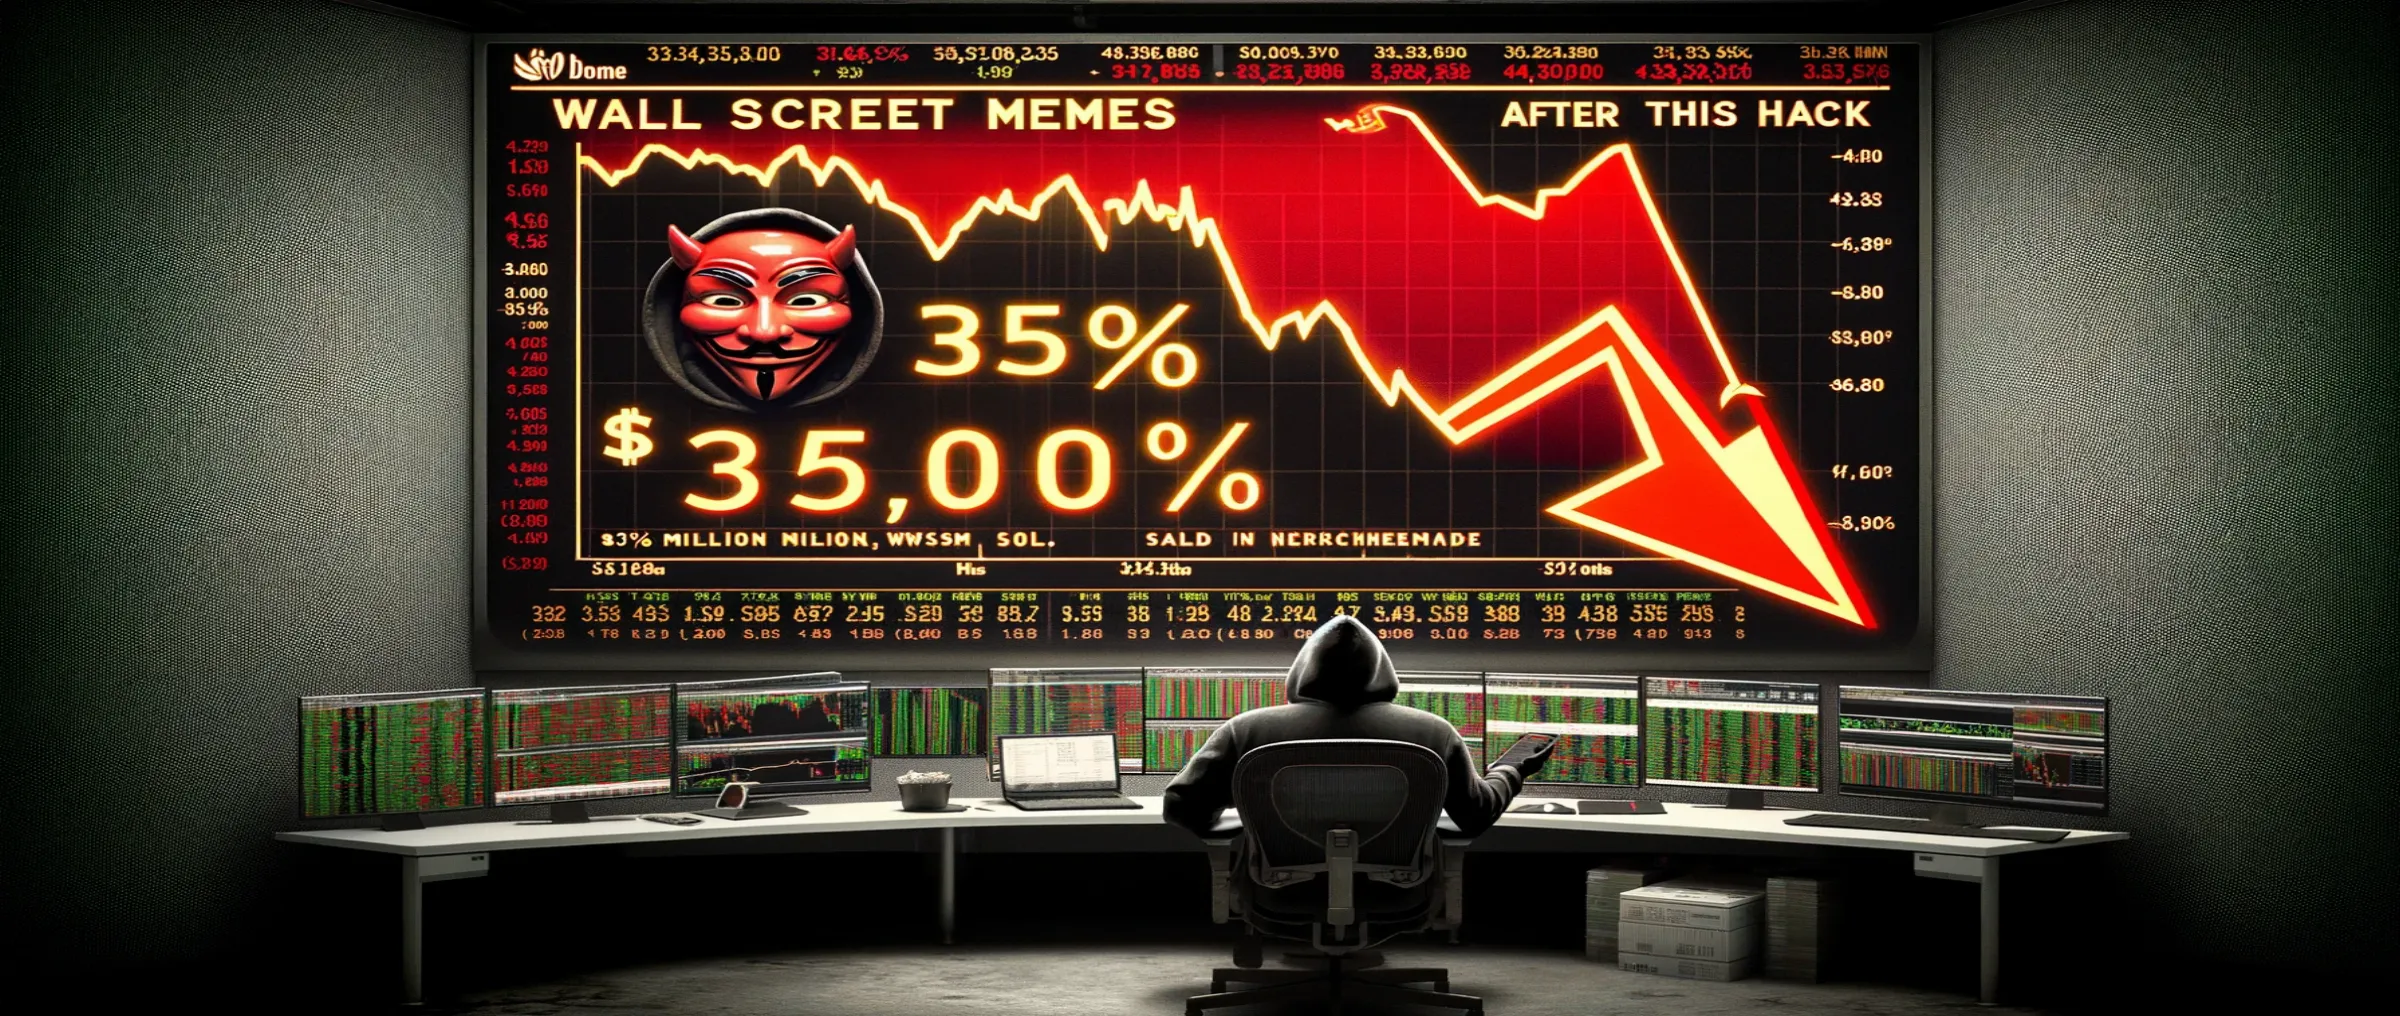 Курс Wall Street Memes упал на 35% после хакера, который продал 368 млн WSM